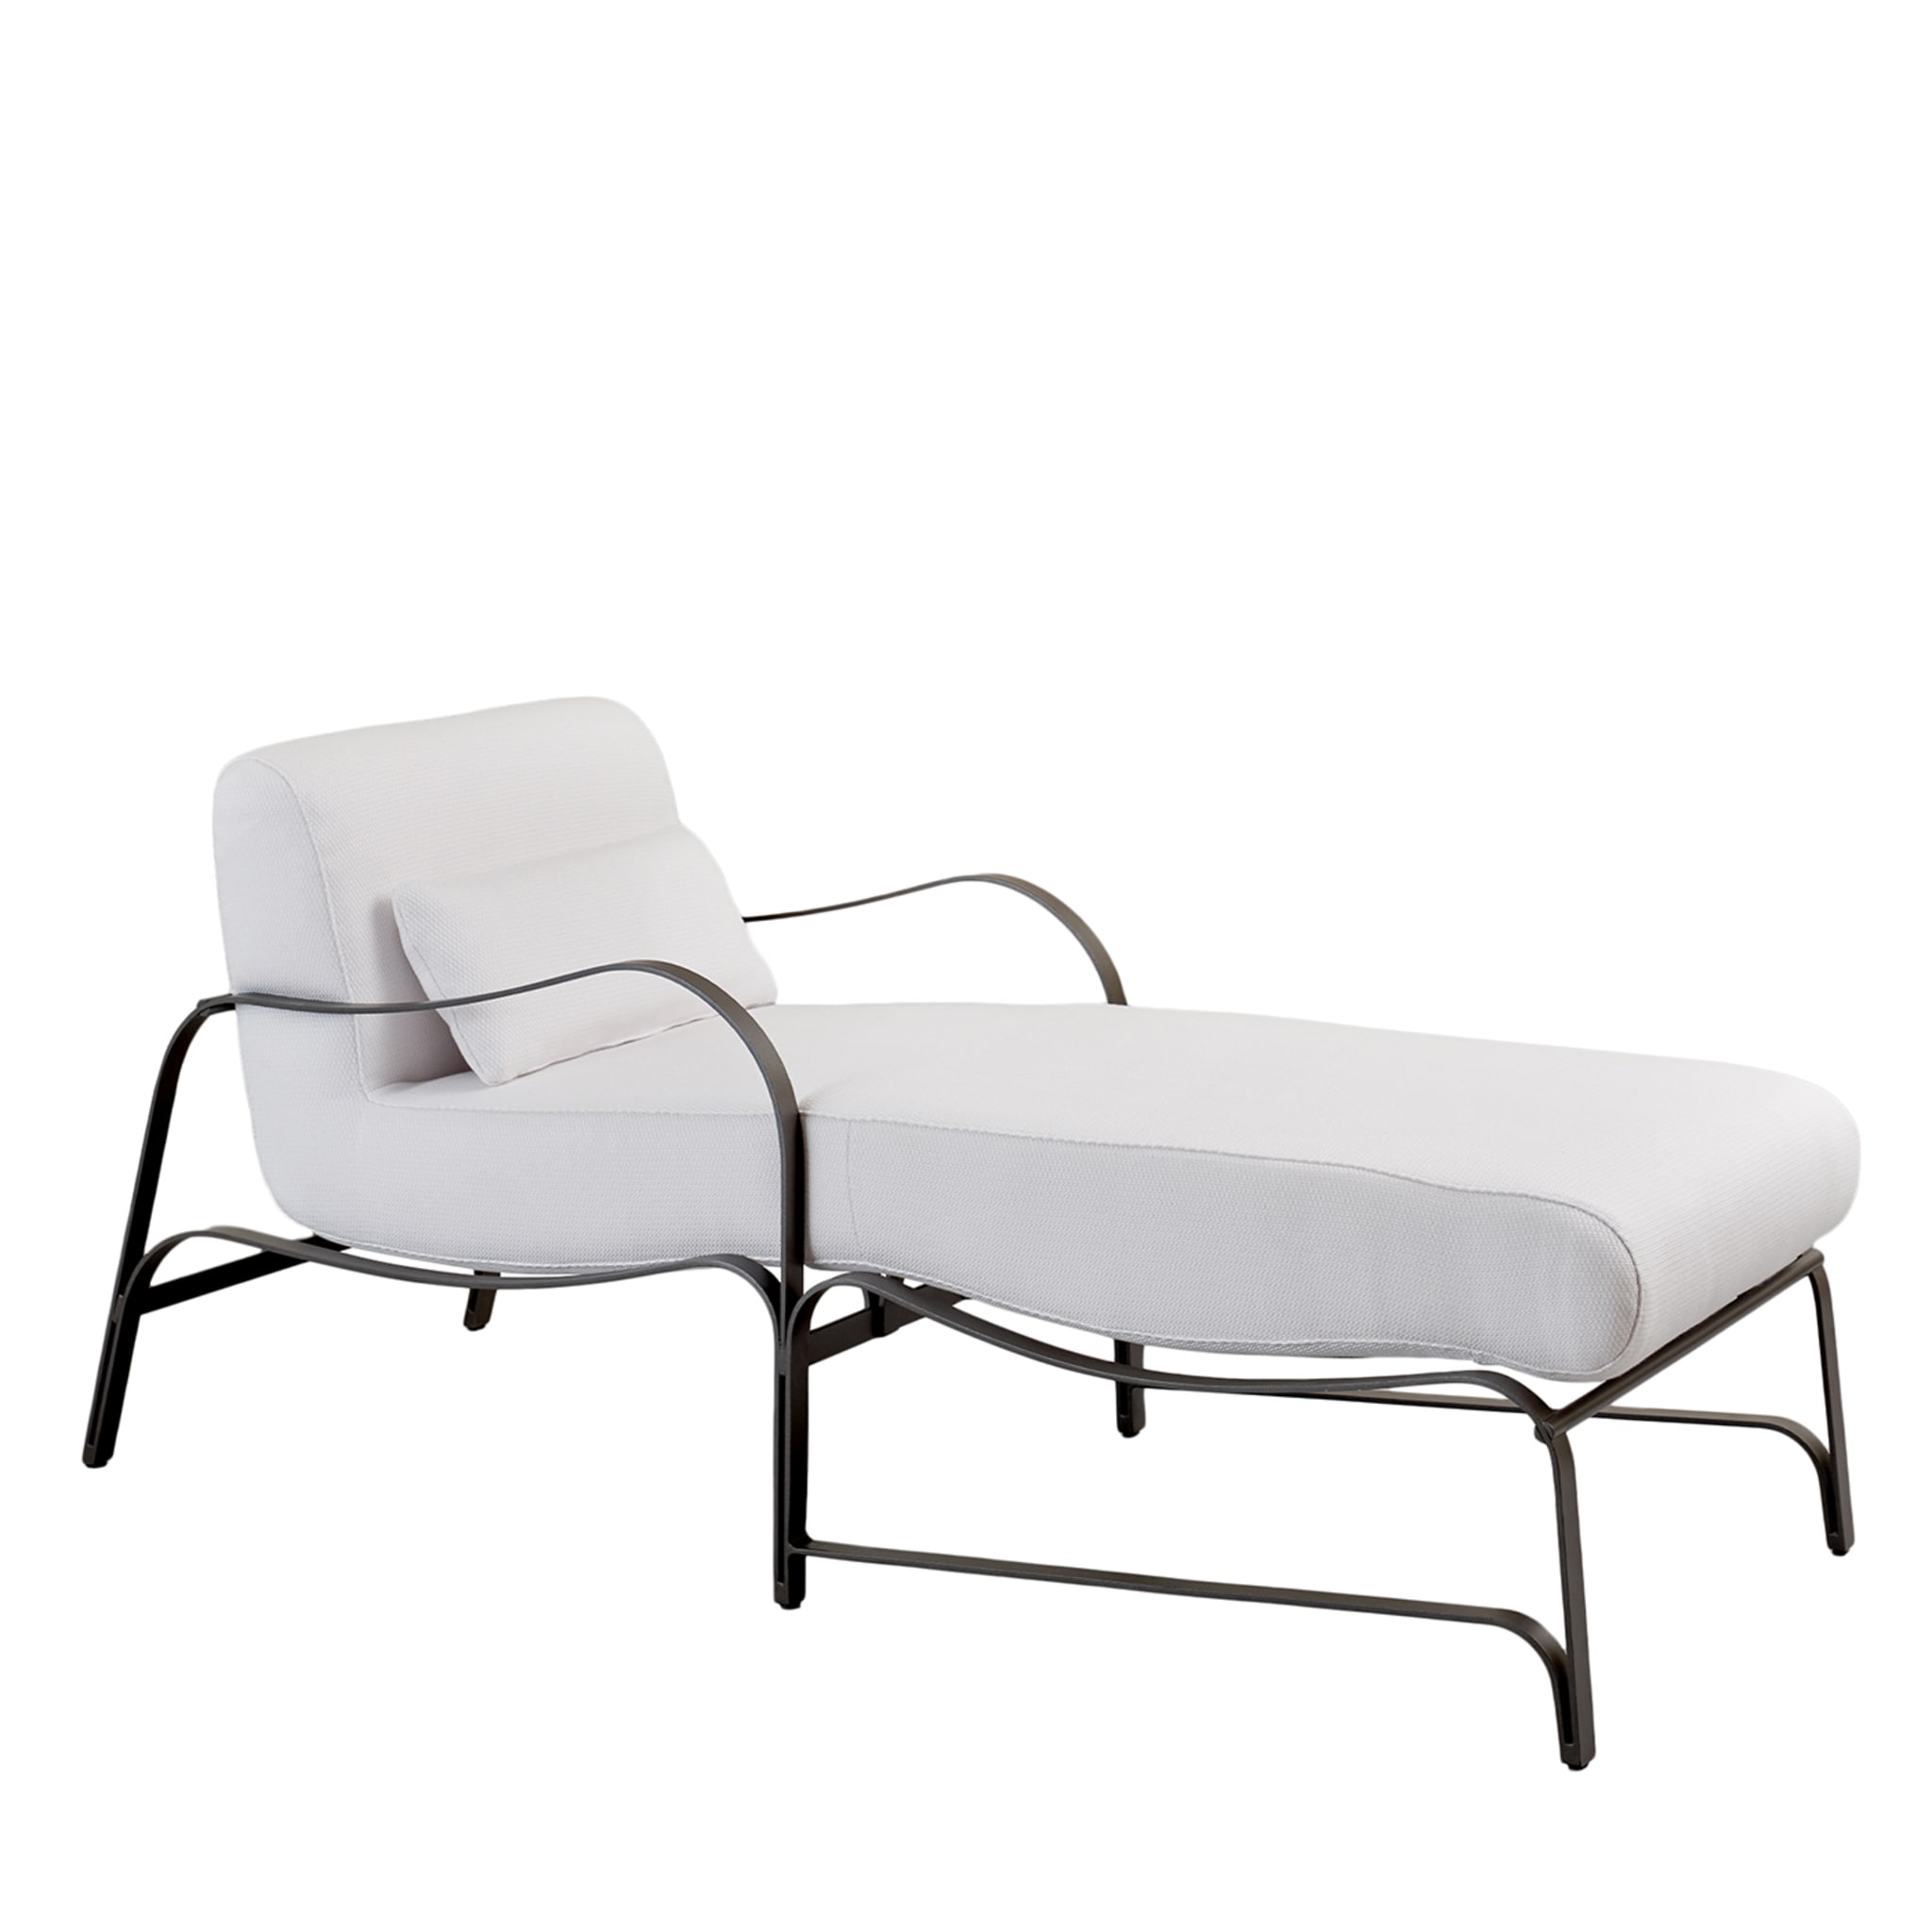 Chaise longue Amalfi blanche et grise par Studio 63  - Vue principale